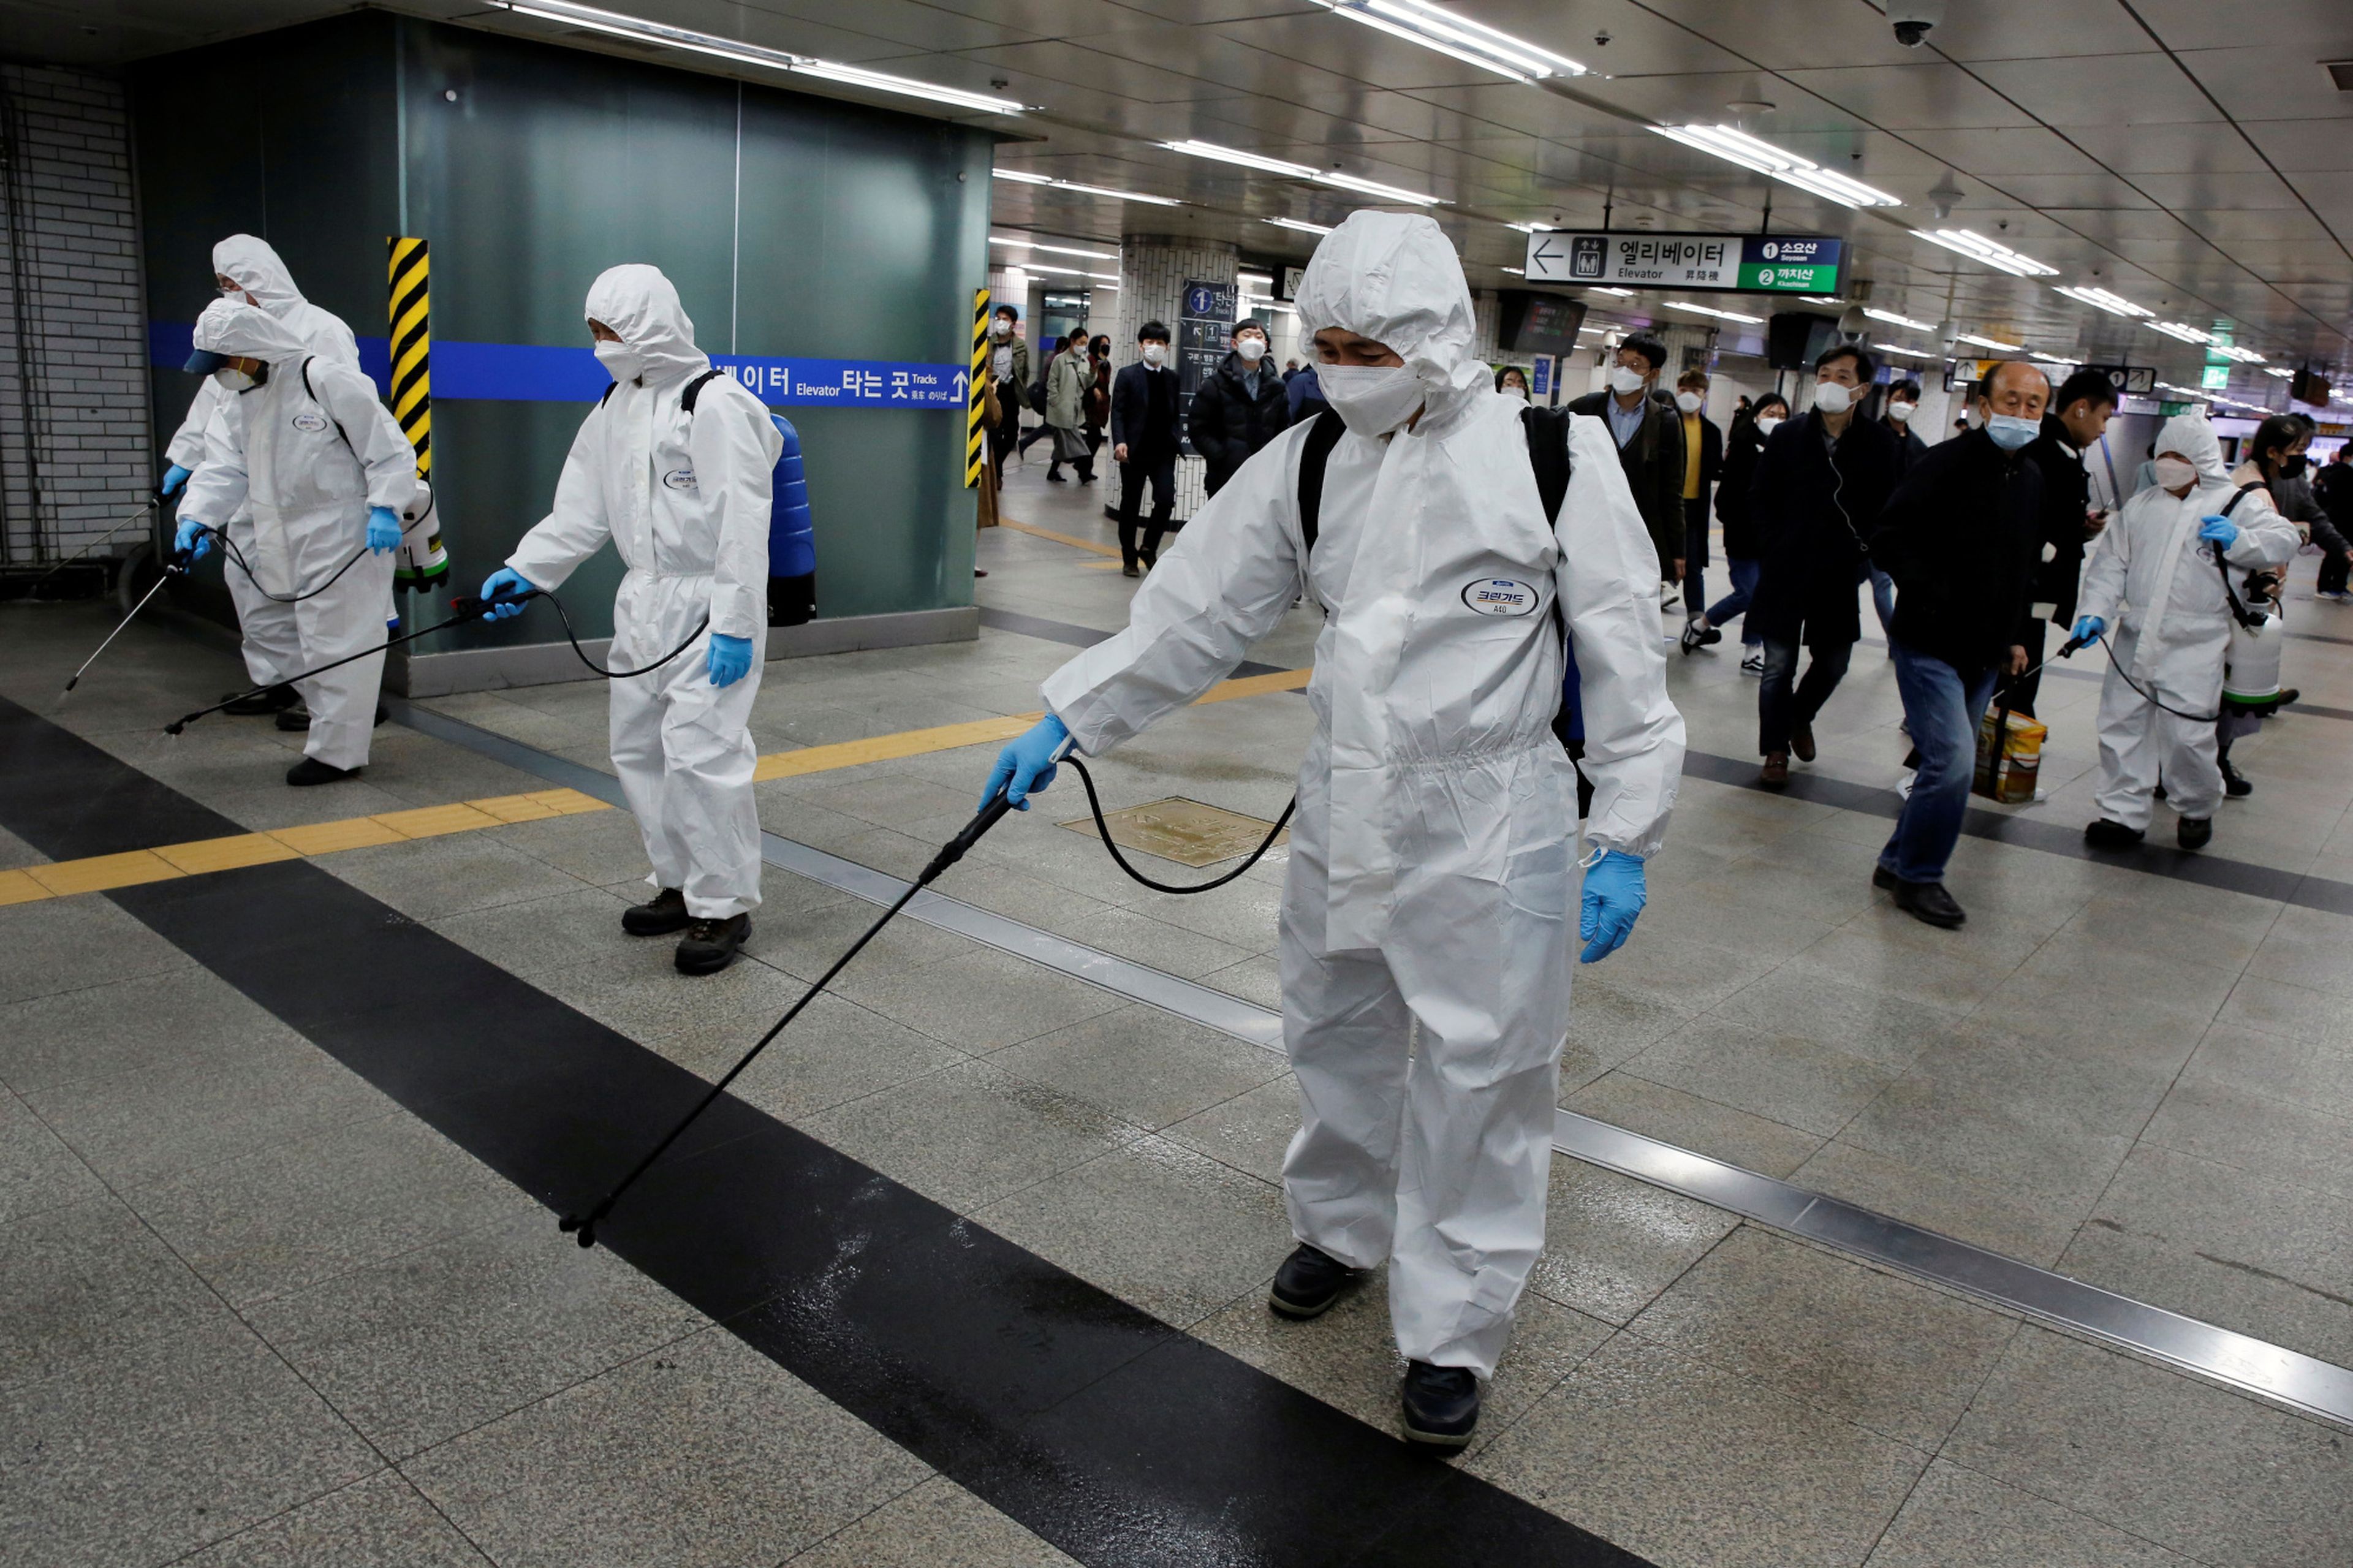 Trabajadores desinfectan desinfectan una estación de metro en medio de los temores de coronavirus en Seúl, Corea del Sur el 11 de marzo de 2020.